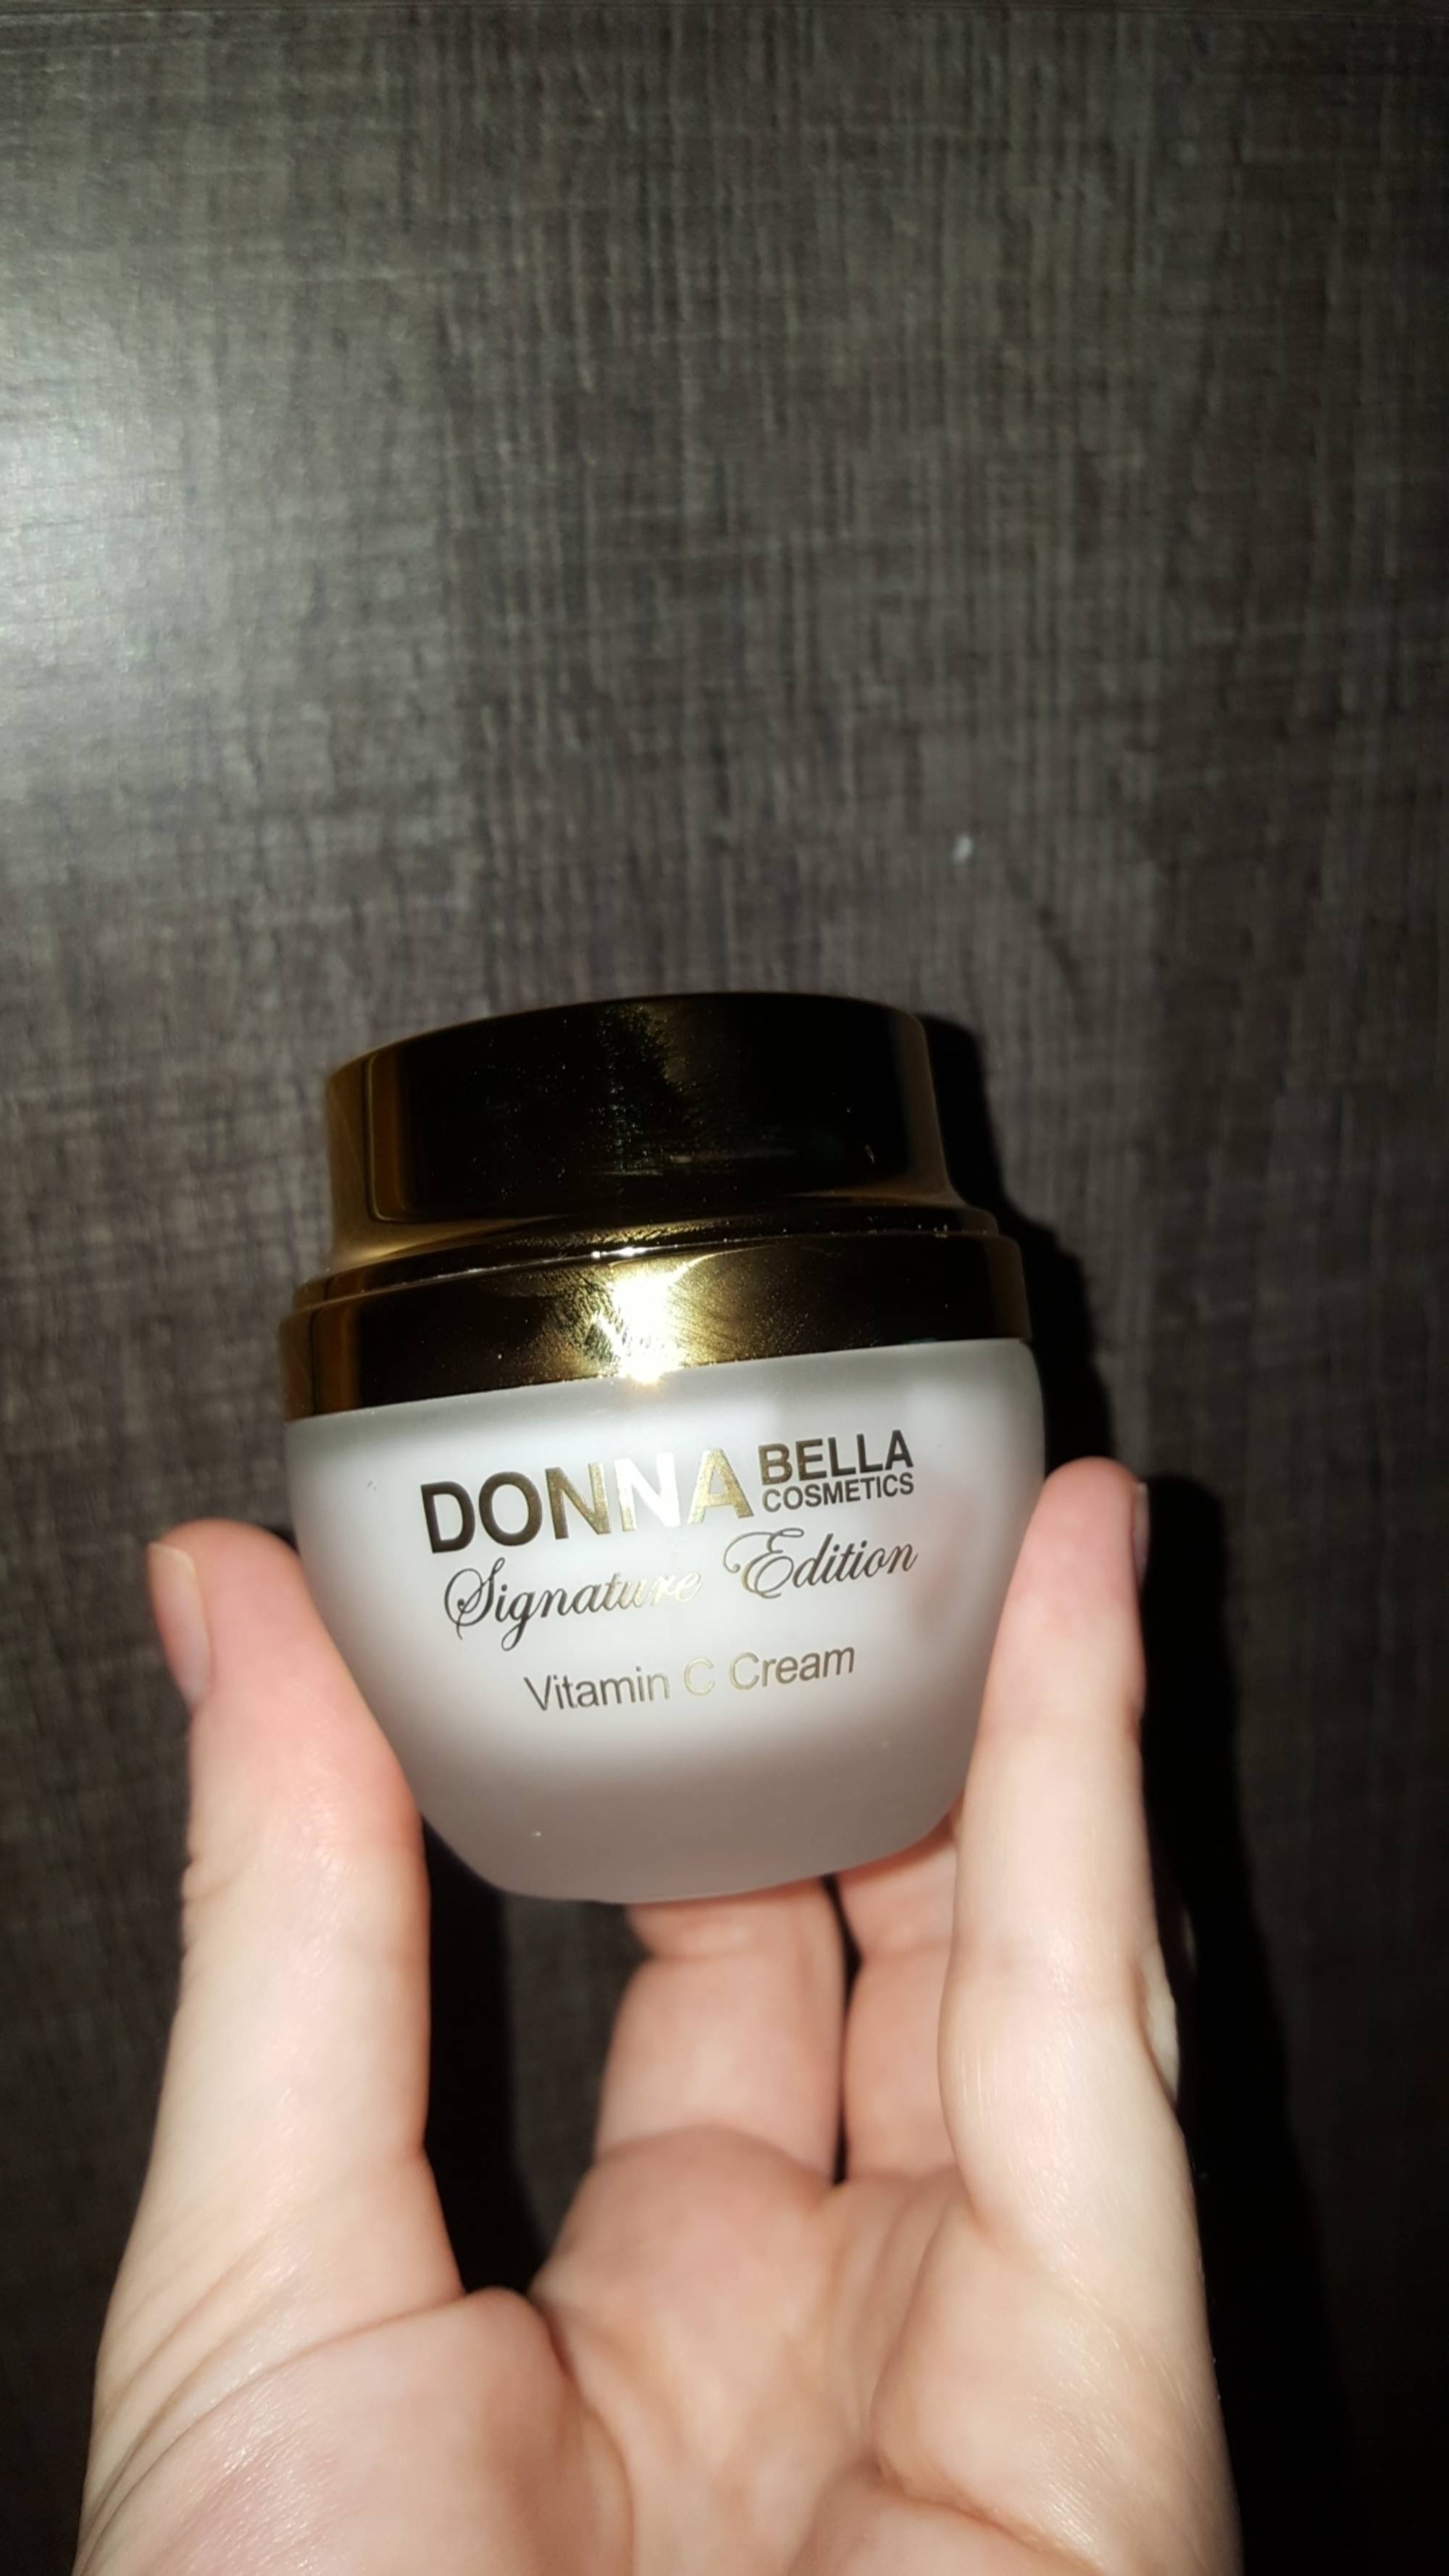 DONNA BELLA - Signature édition - Vitamin C cream